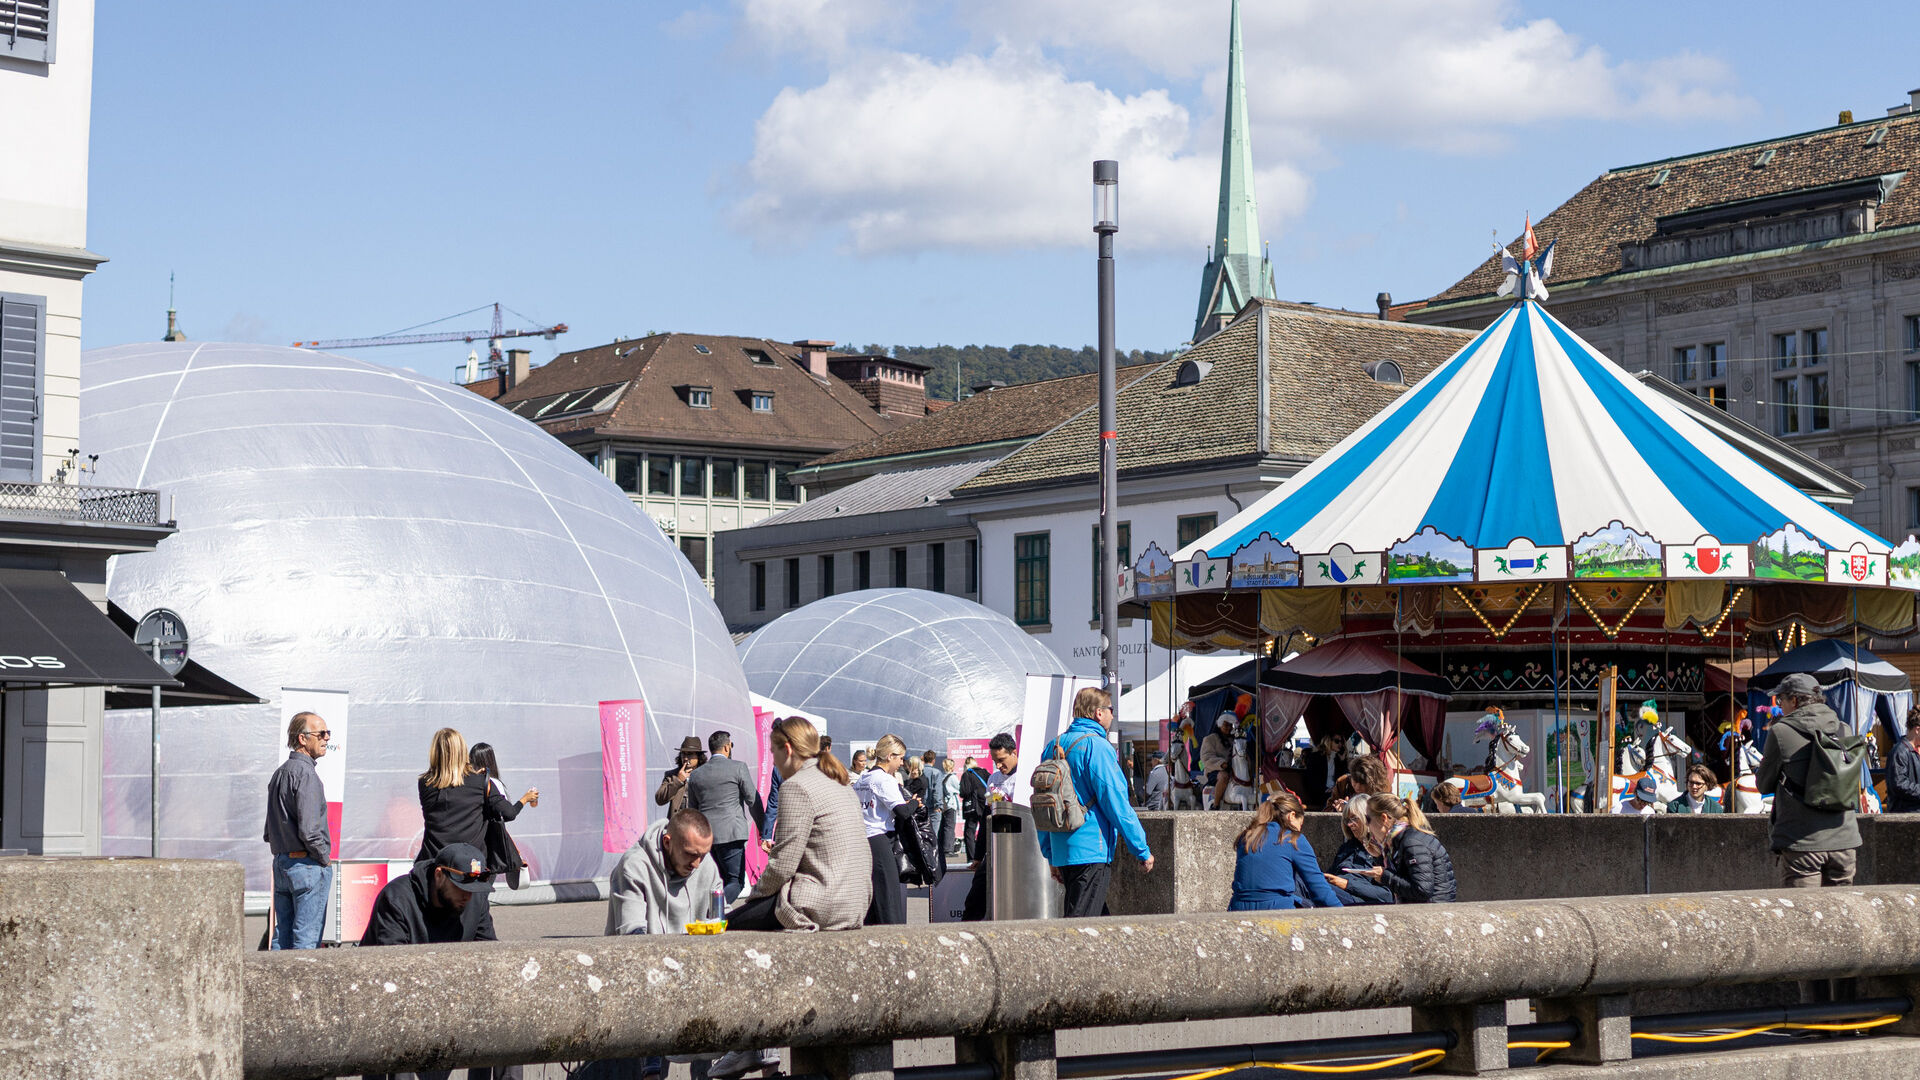 Οι "Swiss Digital Days" 2022 σταμάτησαν στη Ζυρίχη (Ζυρίχη), στο Schaffhausen (Schaffhausen) και στο Winterthur (Ζυρίχη) από τις 19 έως τις 25 Σεπτεμβρίου